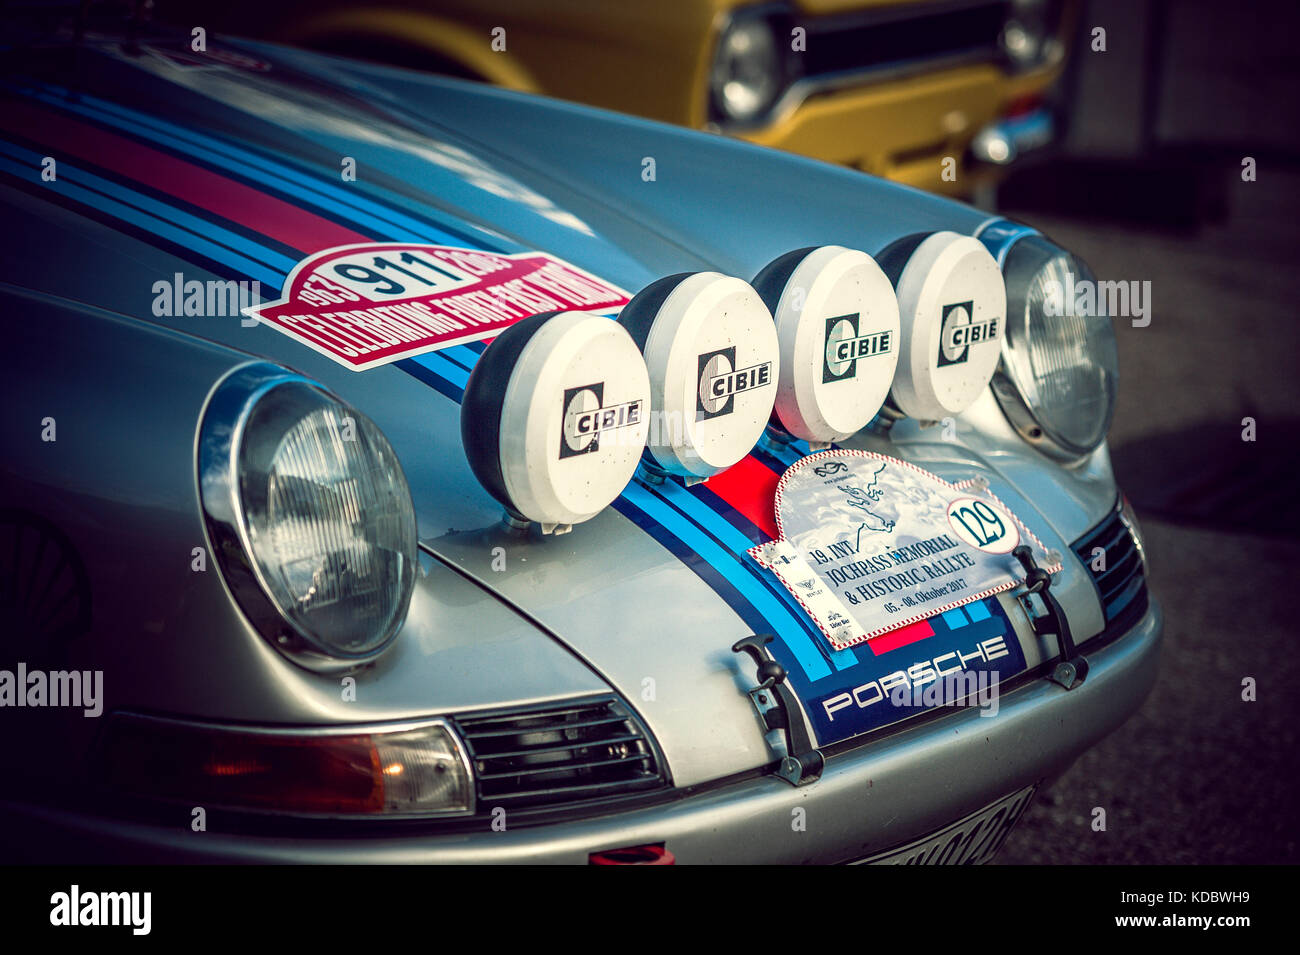 Porsche 911 martini immagini e fotografie stock ad alta risoluzione - Alamy